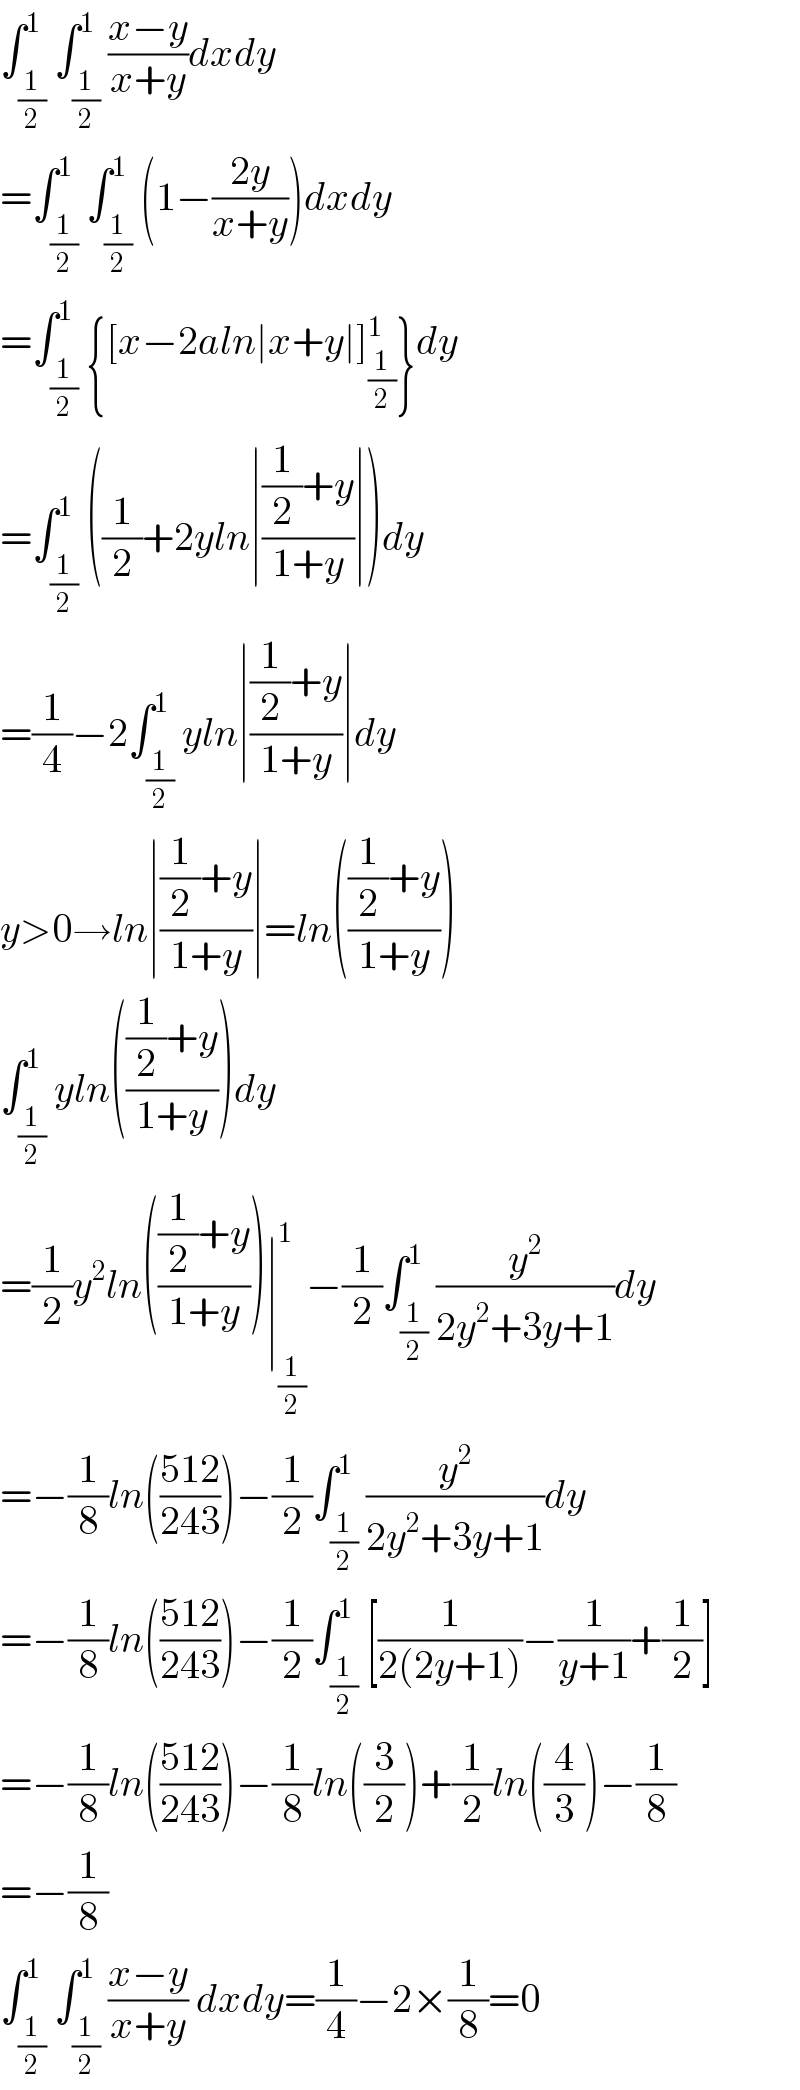 ∫_(1/2) ^1 ∫_(1/2) ^1 ((x−y)/(x+y))dxdy  =∫_(1/2) ^1 ∫_(1/2) ^1 (1−((2y)/(x+y)))dxdy  =∫_(1/2) ^1 {[x−2aln∣x+y∣]_(1/2) ^1 }dy  =∫_(1/2) ^1 ((1/2)+2yln∣(((1/2)+y)/(1+y))∣)dy  =(1/4)−2∫_(1/2) ^1 yln∣(((1/2)+y)/(1+y))∣dy  y>0→ln∣(((1/2)+y)/(1+y))∣=ln((((1/2)+y)/(1+y)))  ∫_(1/2) ^1 yln((((1/2)+y)/(1+y)))dy  =(1/2)y^2 ln((((1/2)+y)/(1+y)))∣_(1/2) ^1 −(1/2)∫_(1/2) ^1 (y^2 /(2y^2 +3y+1))dy  =−(1/8)ln(((512)/(243)))−(1/2)∫_(1/2) ^1 (y^2 /(2y^2 +3y+1))dy  =−(1/8)ln(((512)/(243)))−(1/2)∫_(1/2) ^1 [(1/(2(2y+1)))−(1/(y+1))+(1/2)]  =−(1/8)ln(((512)/(243)))−(1/8)ln((3/2))+(1/2)ln((4/3))−(1/8)  =−(1/8)  ∫_(1/2) ^1 ∫_(1/2) ^1 ((x−y)/(x+y)) dxdy=(1/4)−2×(1/8)=0  